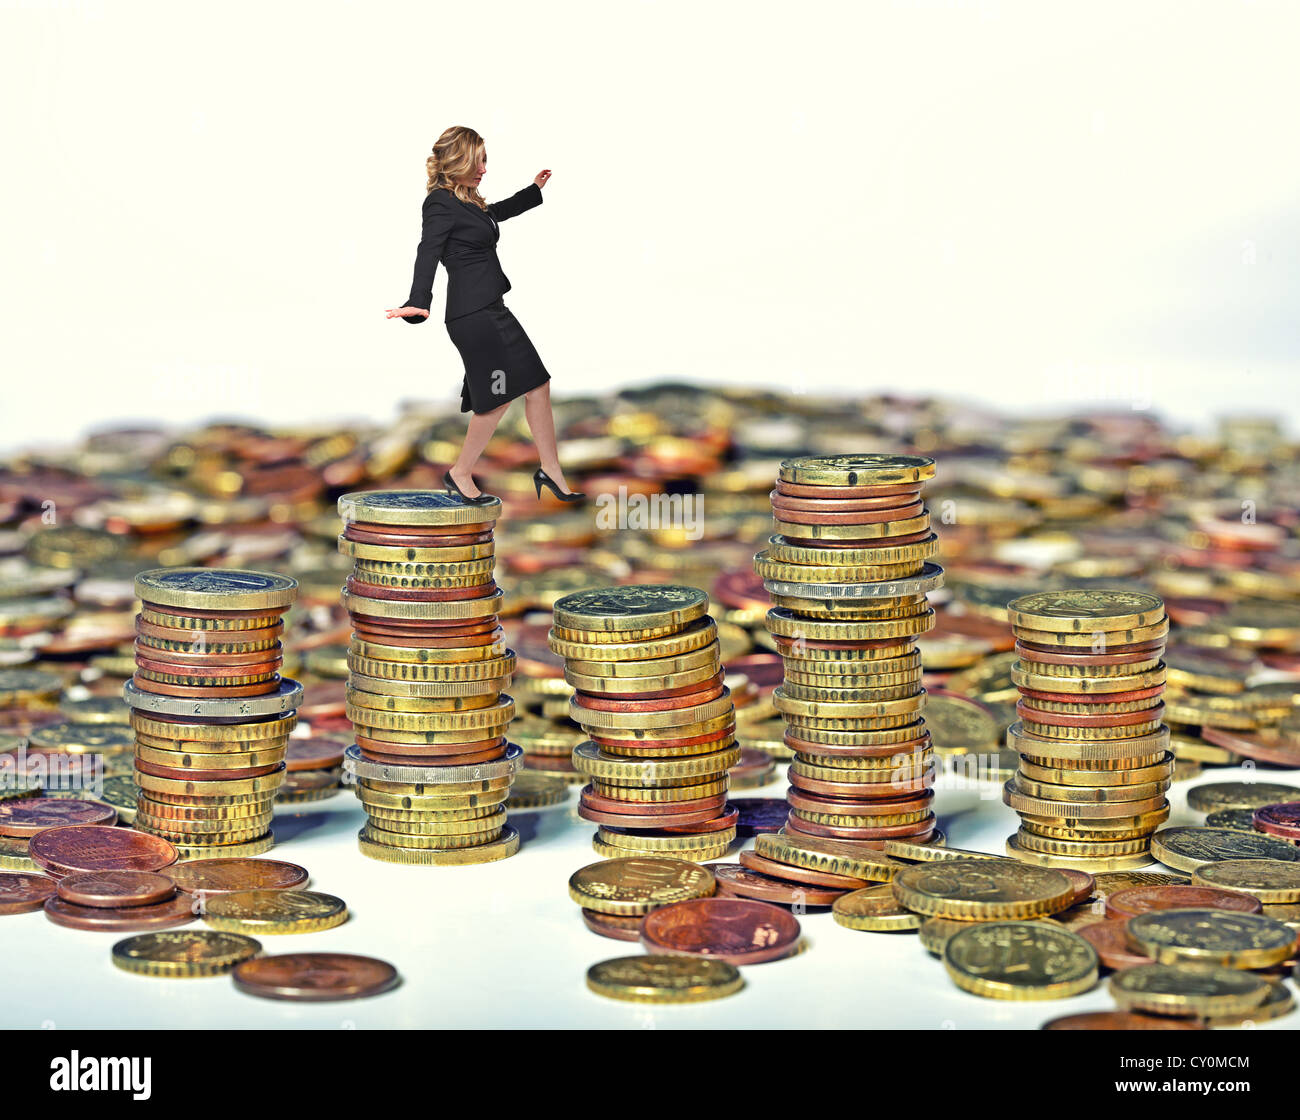 La empresaria caminar sobre montones de monedas de euros Foto de stock